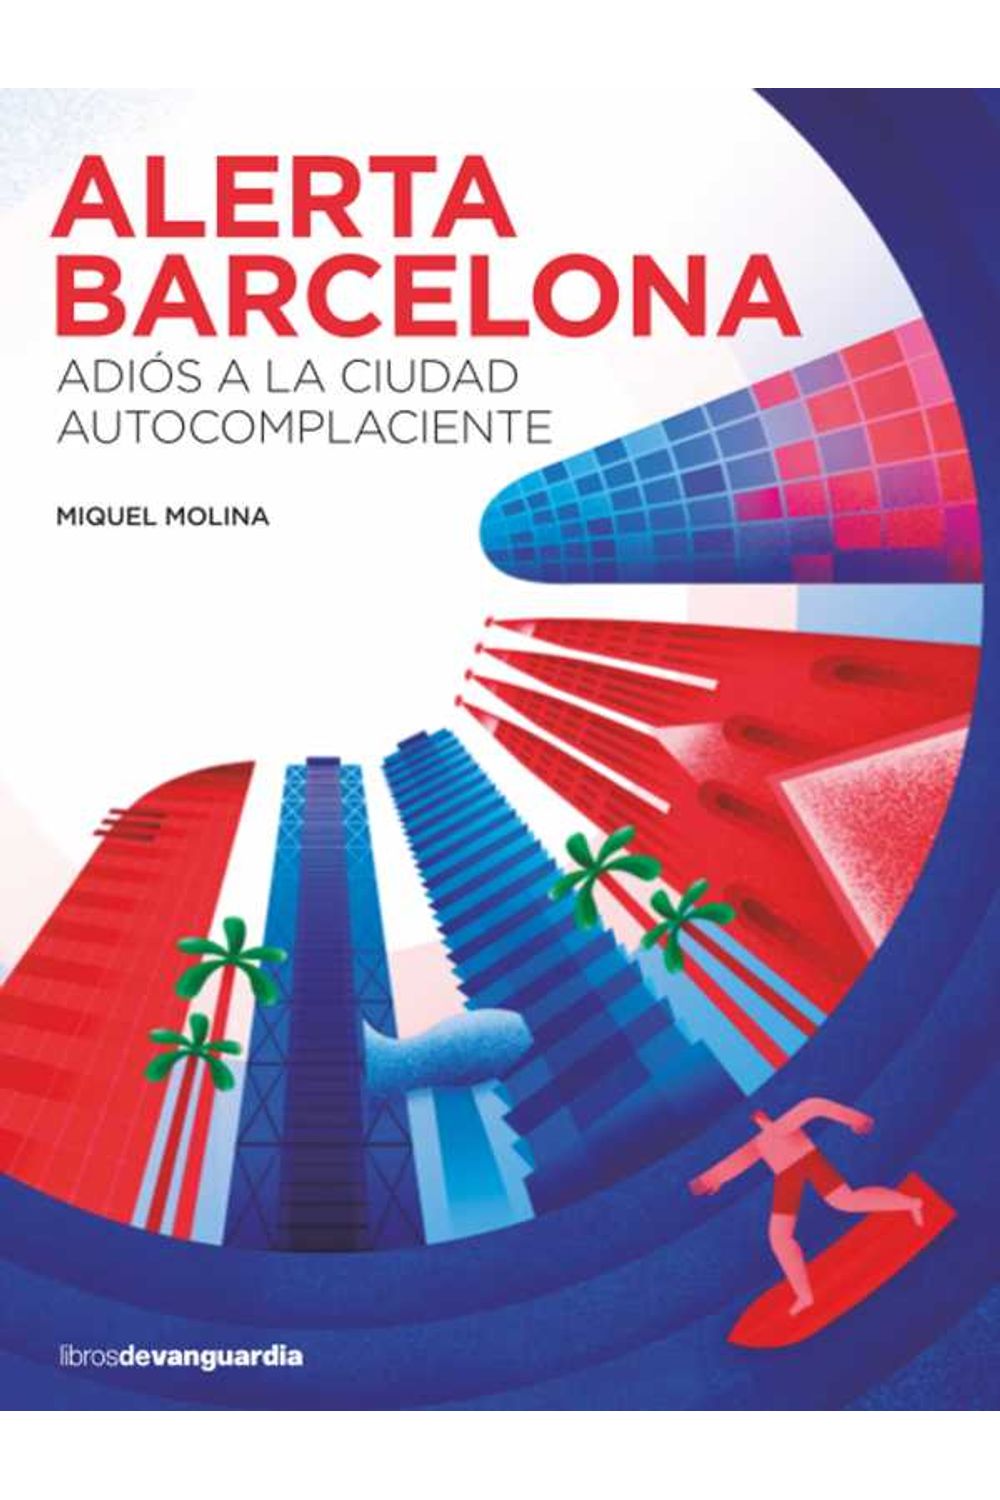 bw-alerta-barcelona-libros-de-vanguardia-9788416372553